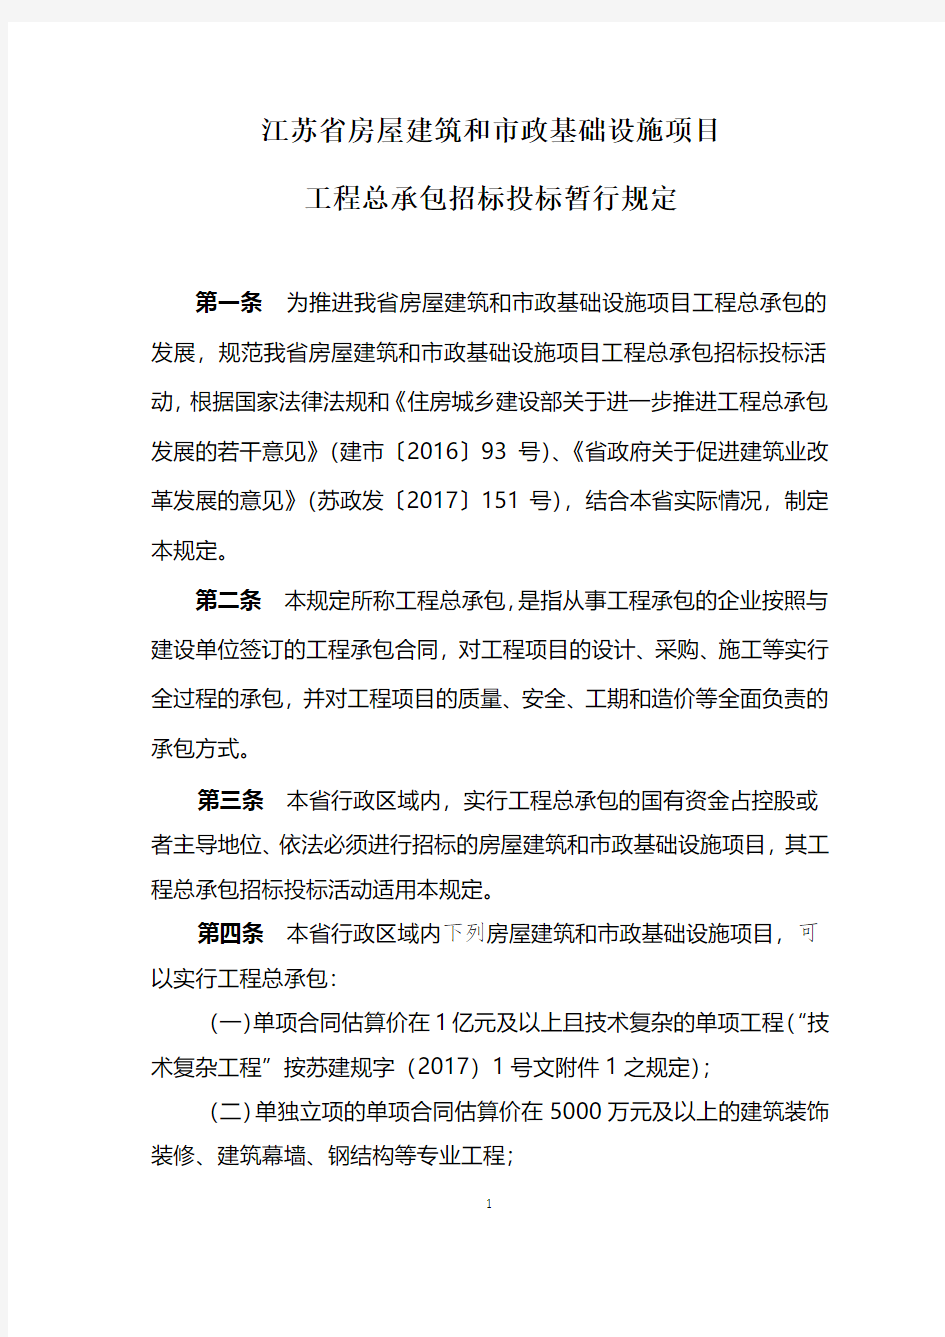 江苏省房屋建筑和市政基础设施项目工程总承包招标投标暂行规定及评标办法 (1)